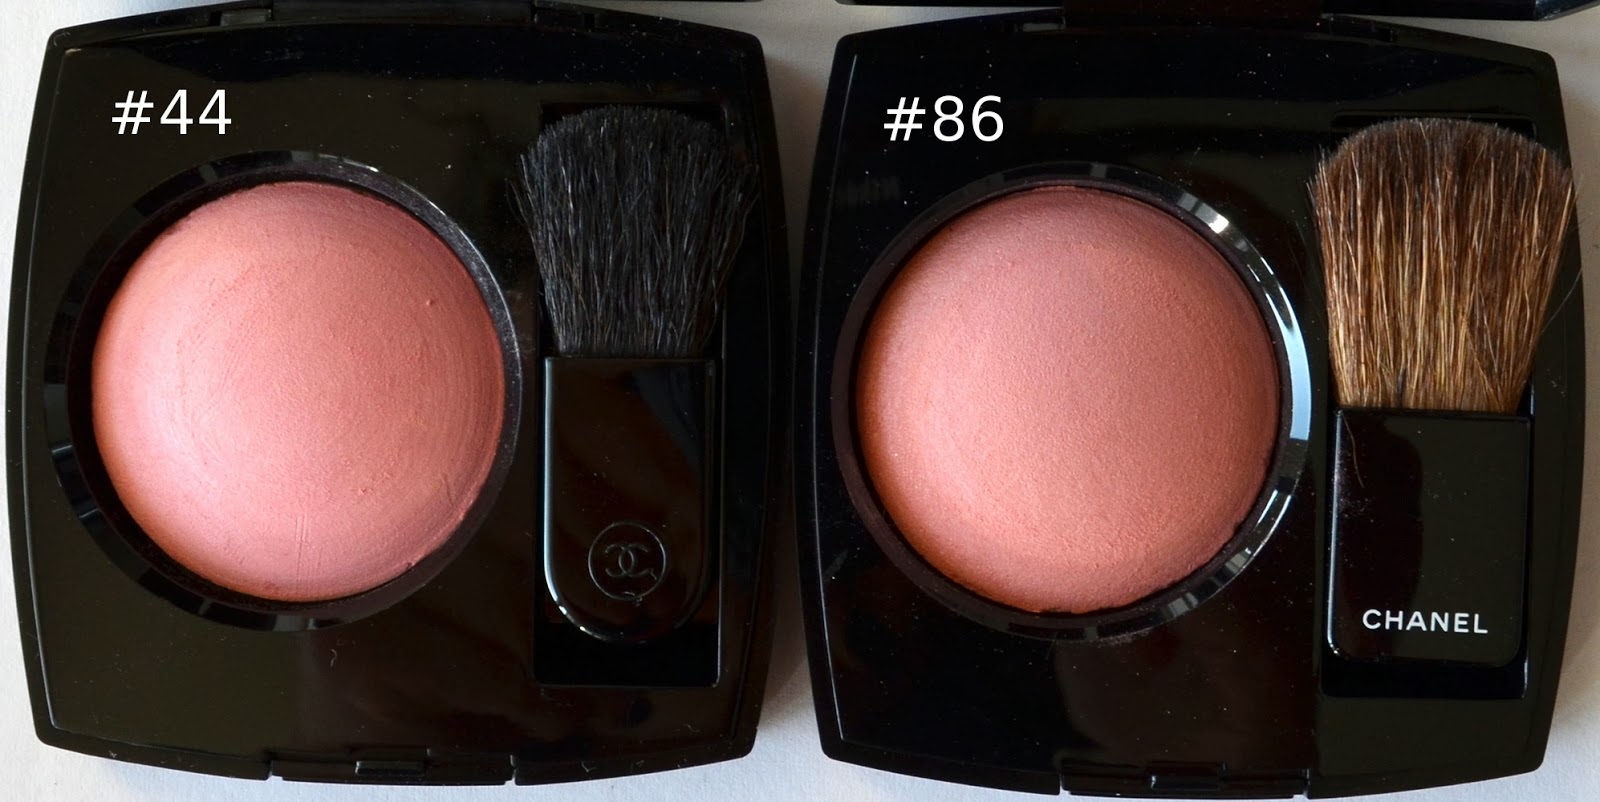 Chanel Joues Contraste Powder Blush #86 Discretion vs. #44